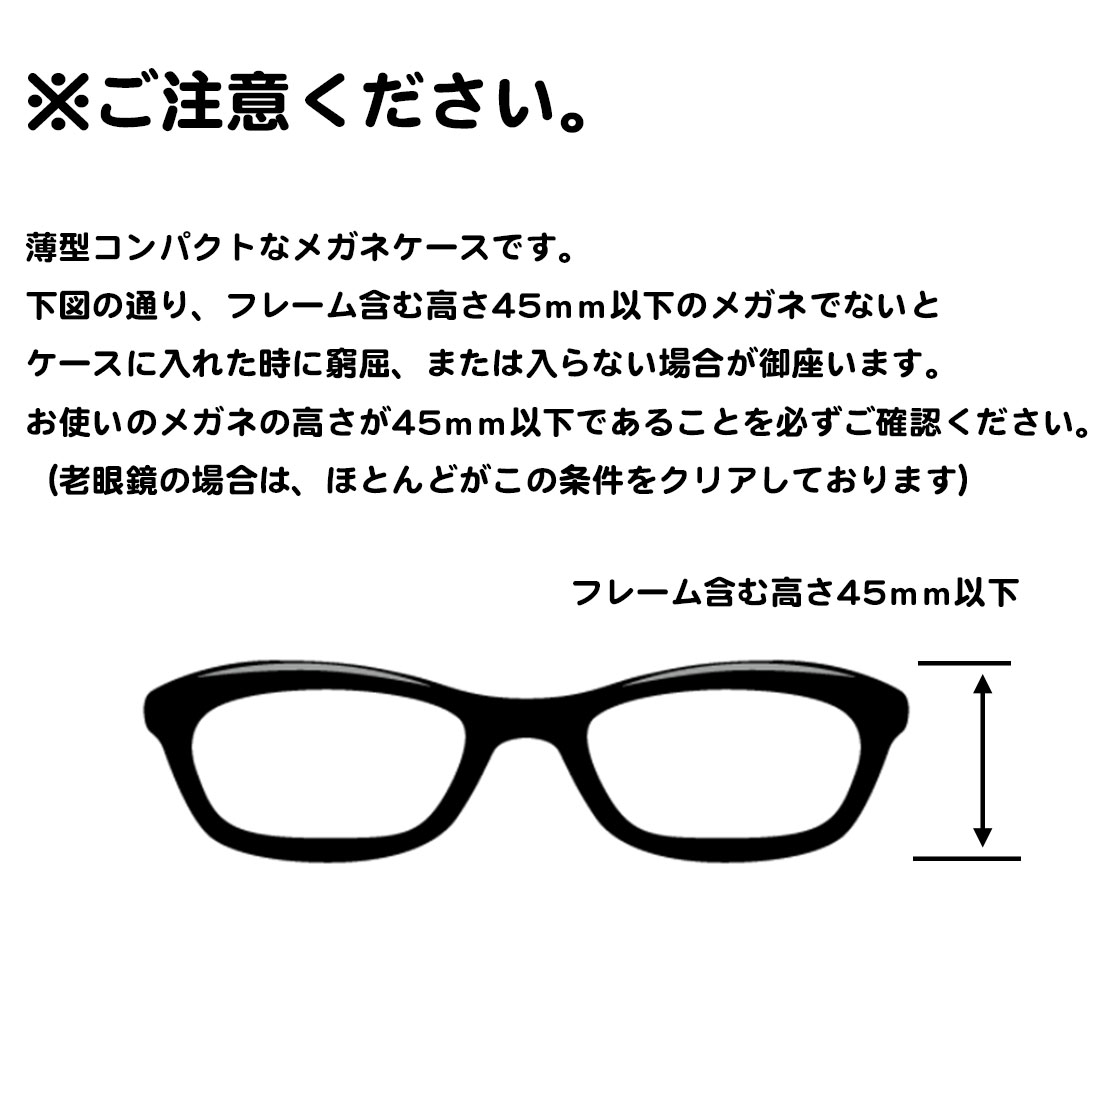 メガネケース ホワイト 老眼鏡 ペンケース 白 サングラス 眼鏡 めがね 韓国 通販